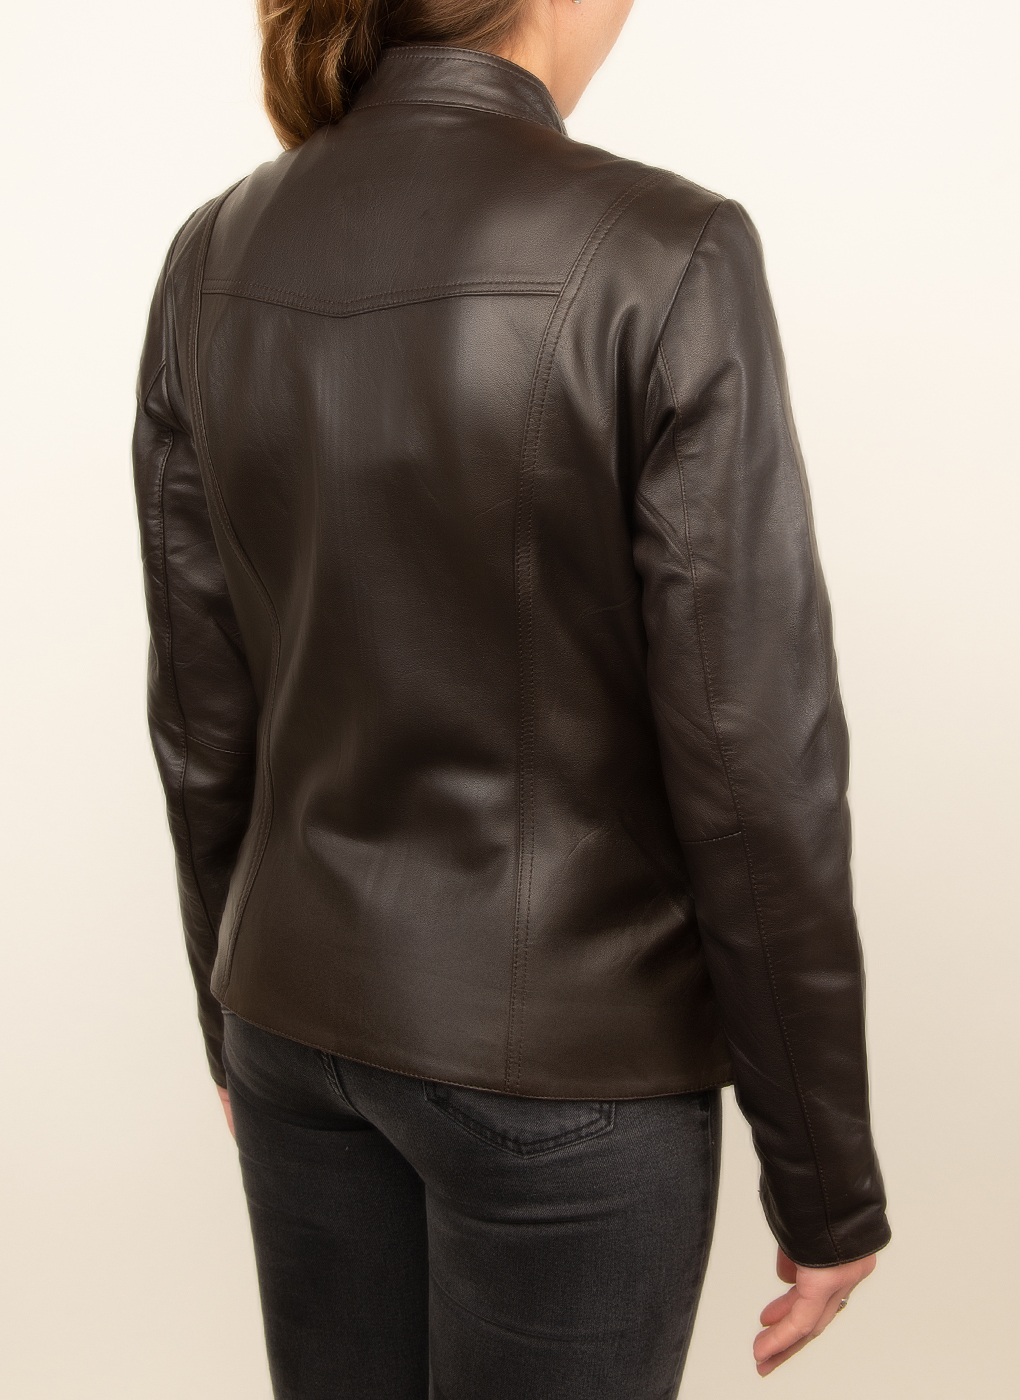 Кожаная куртка женская Каляев 47842 коричневая 44 RU